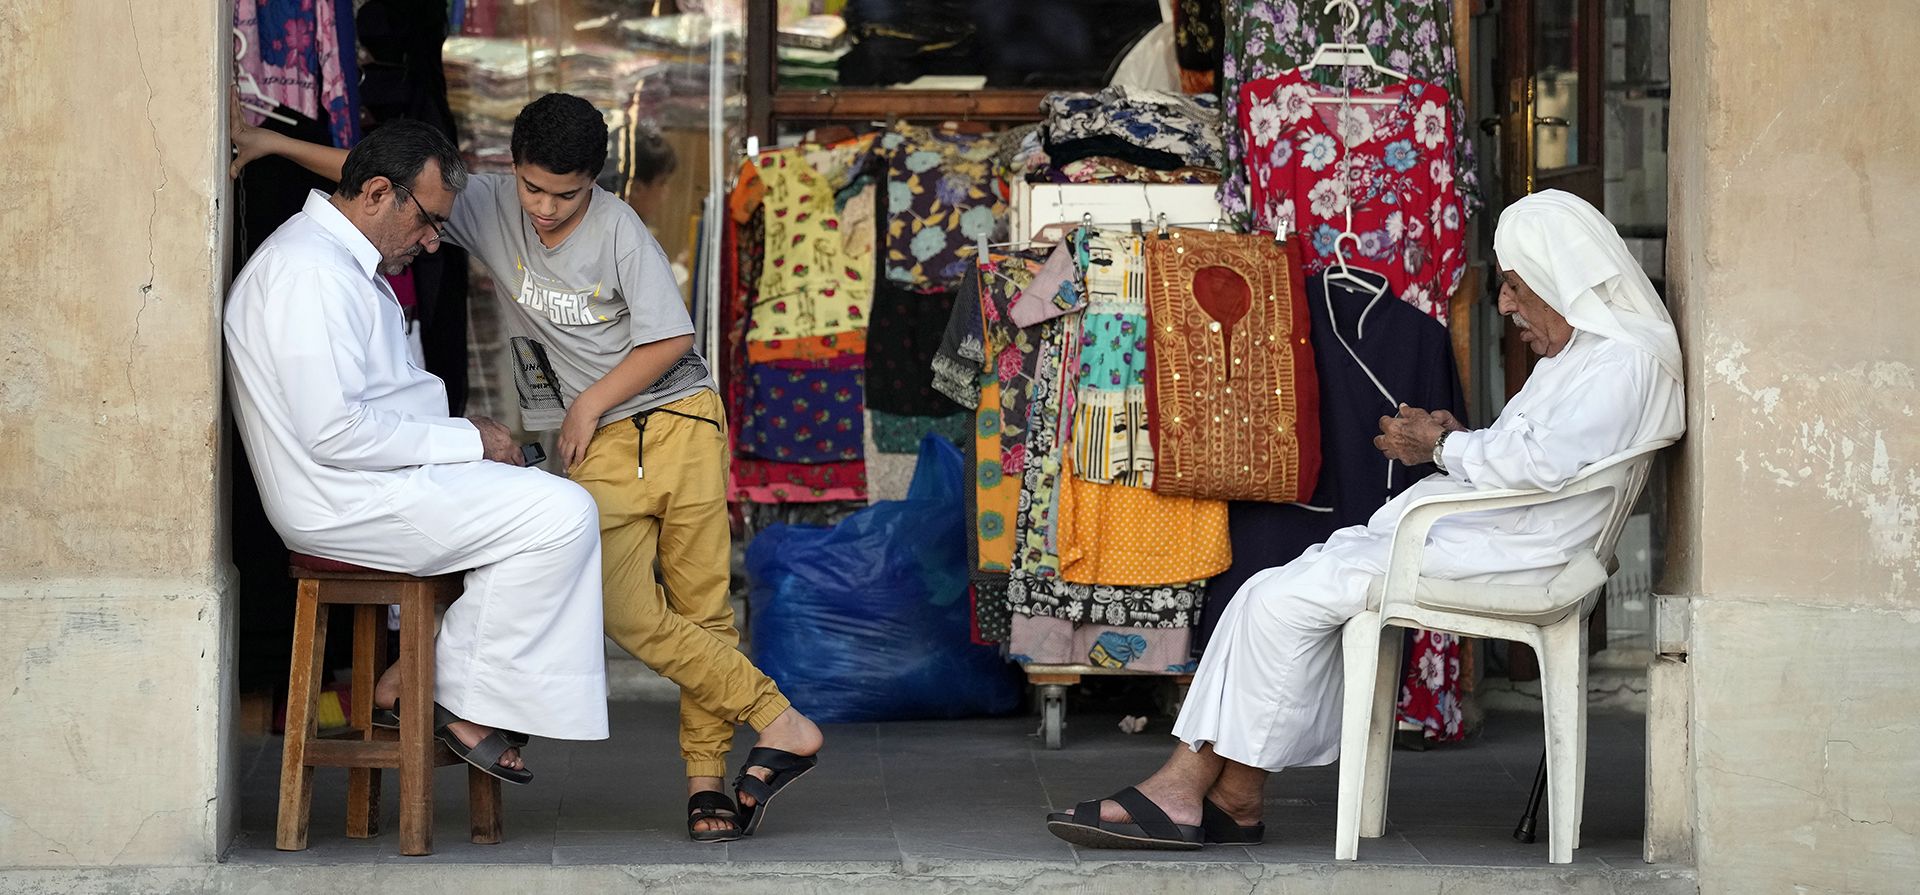 El personal de la tienda espera a los clientes frente a una tienda de souvenirs en el mercado Souq Waqif en Doha, Qatar, el viernes 25 de noviembre de 2022. (Foto AP/Eugene Hoshiko)